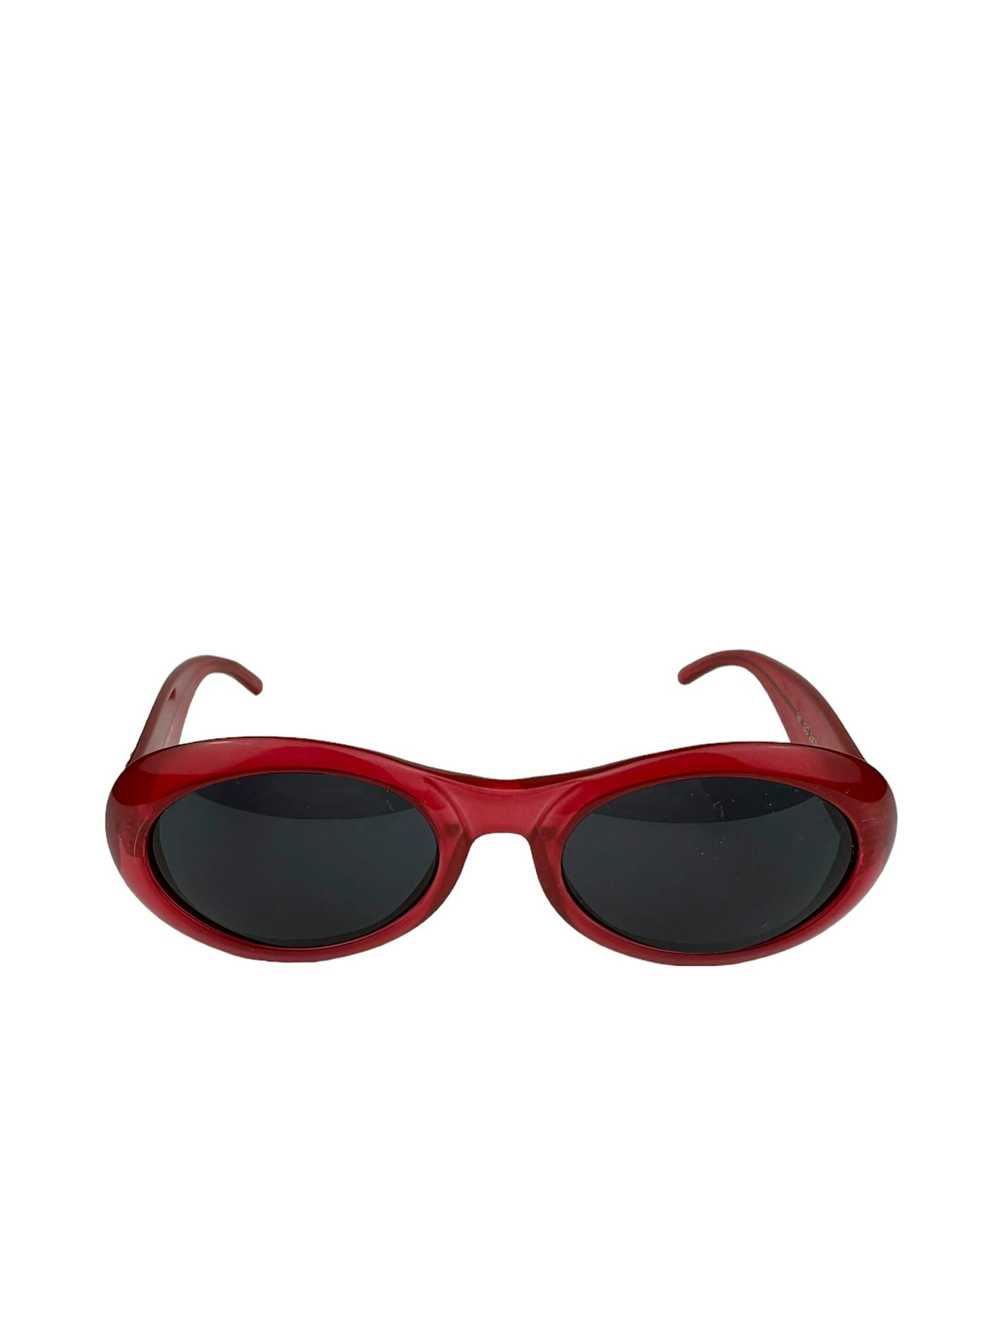 Gucci Gucci GG 2400 Cobain Style Sunglasses - image 3